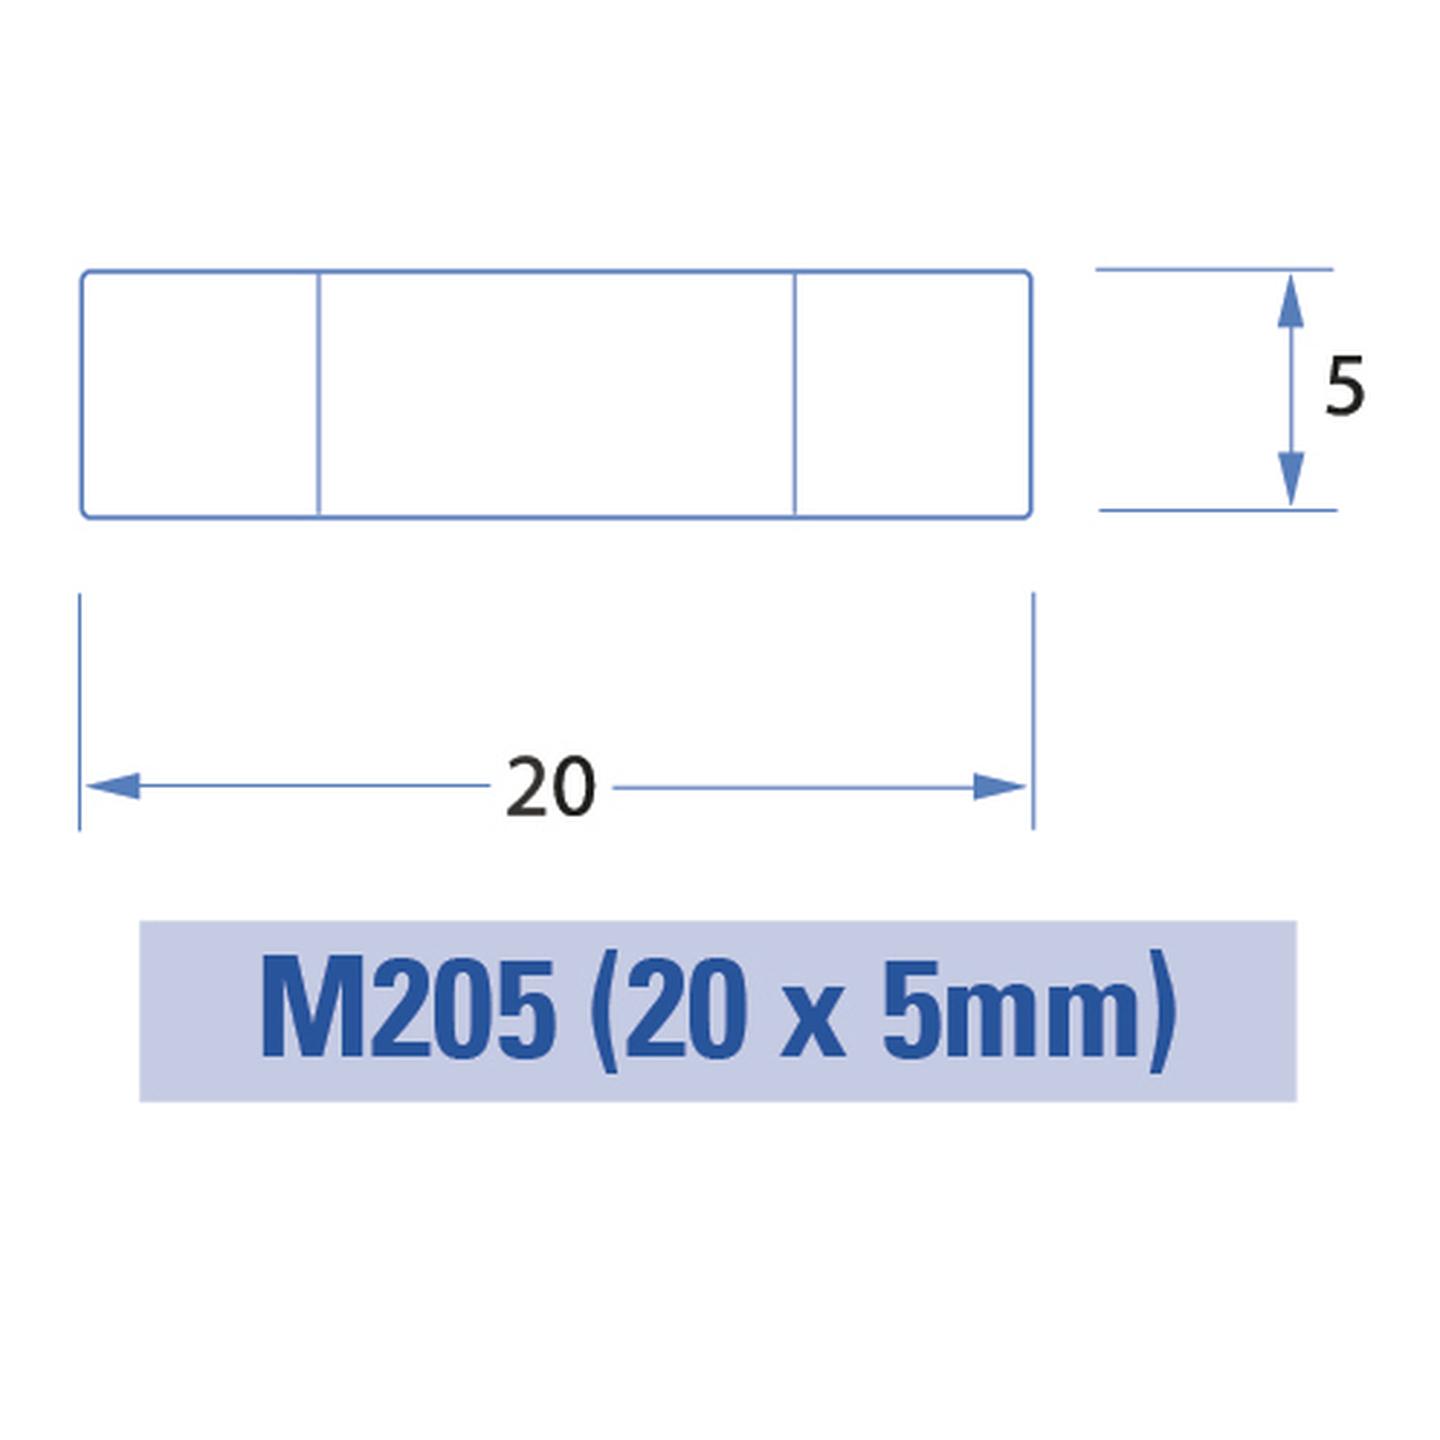 2.5A M205 Ceramic Slow Blow Fuse